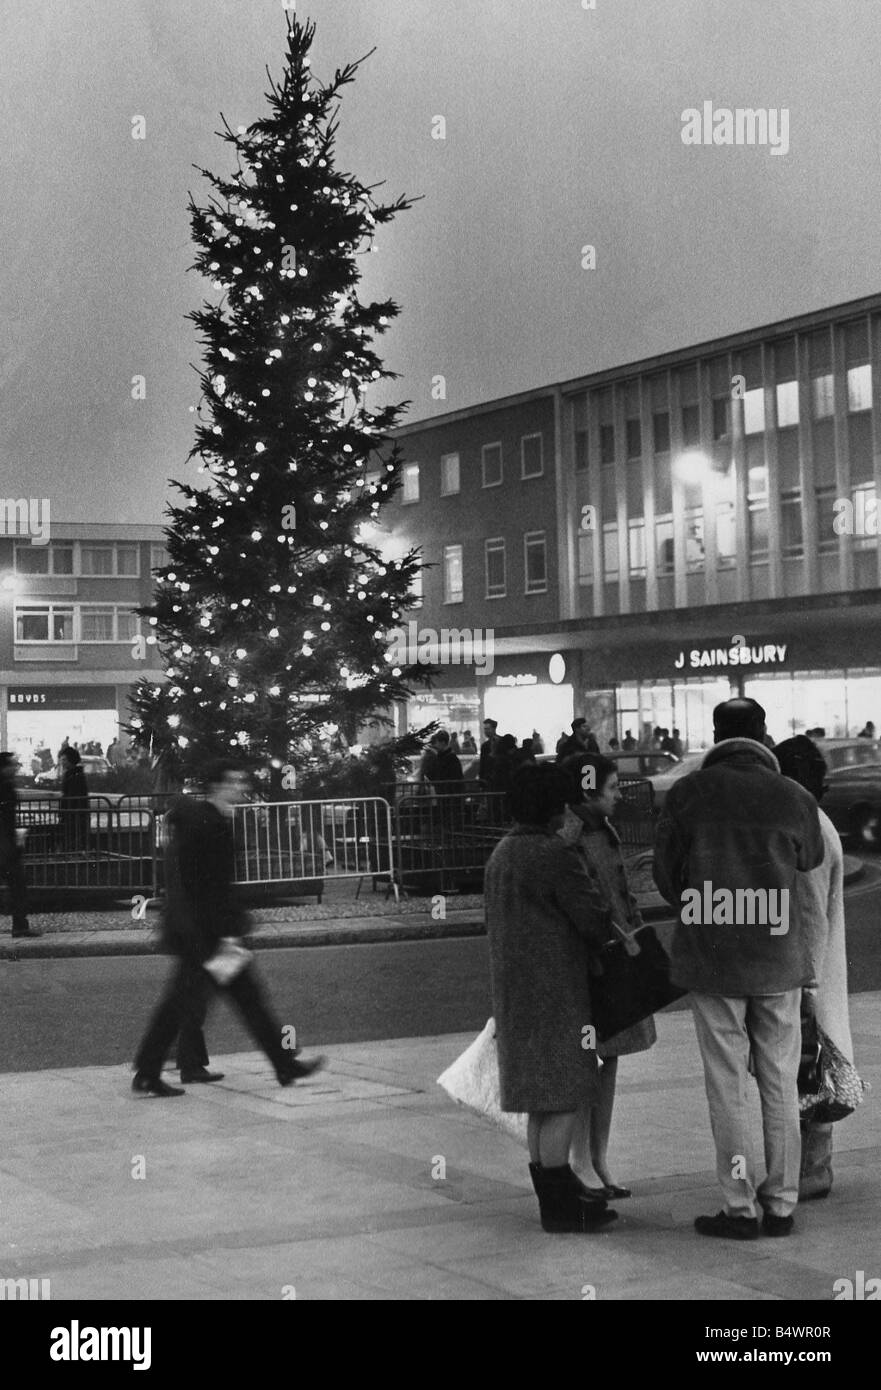 La scène de Noël en place avec la Solihull Mell arbre lumineux dominant la scène comme les magasins recherche acheteurs pour mer Banque D'Images